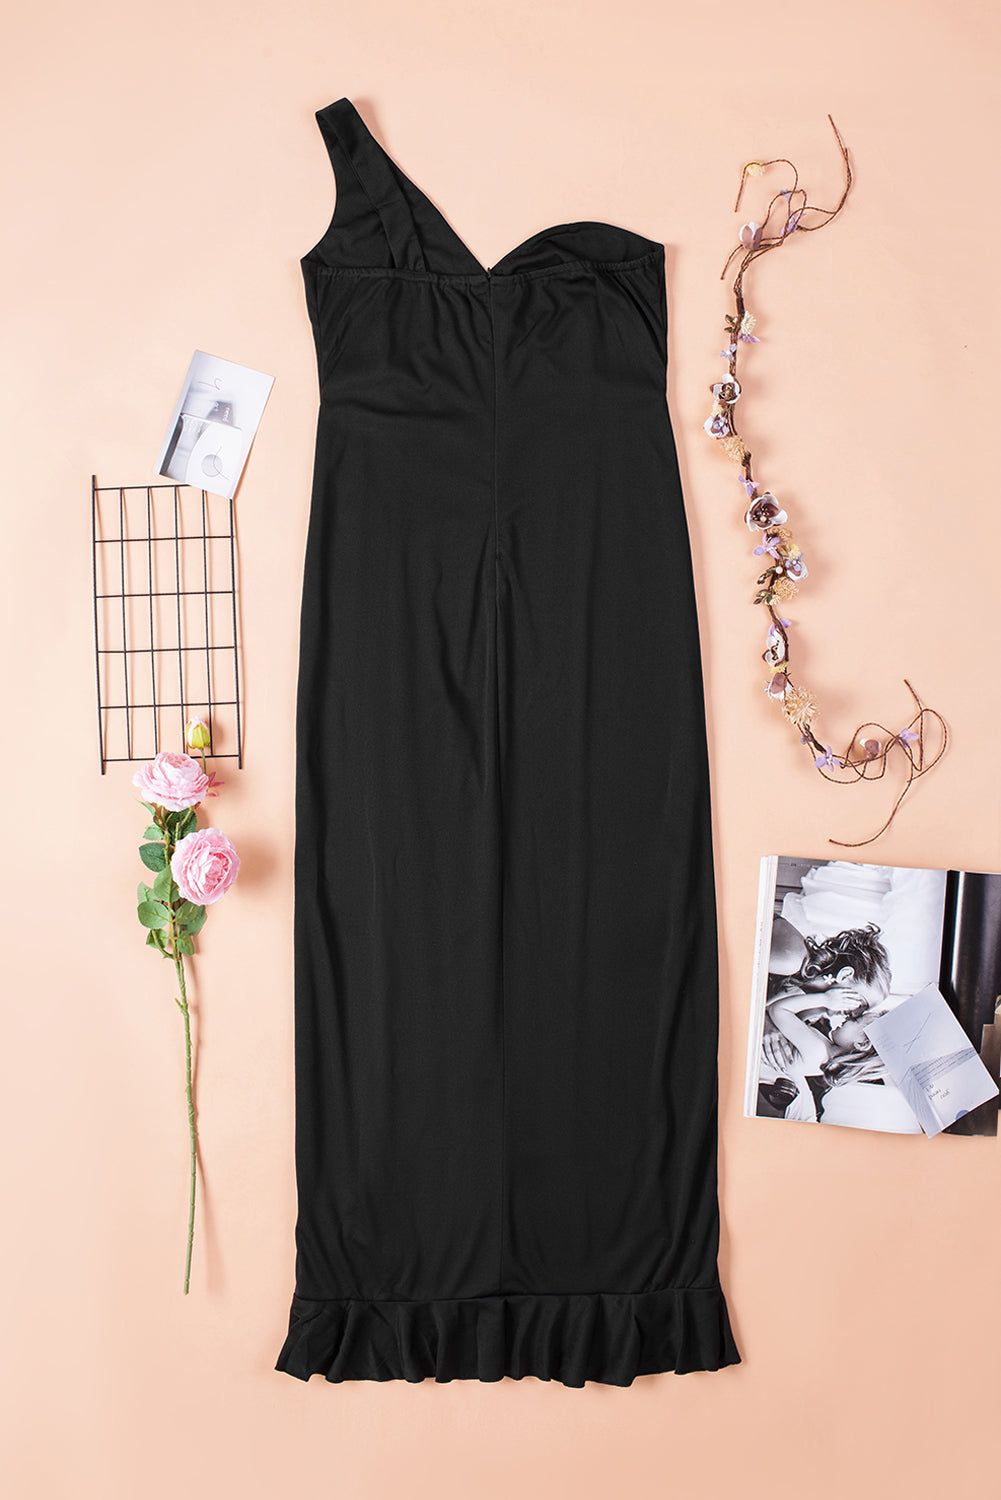 Black One-shoulder Evening Party Dress